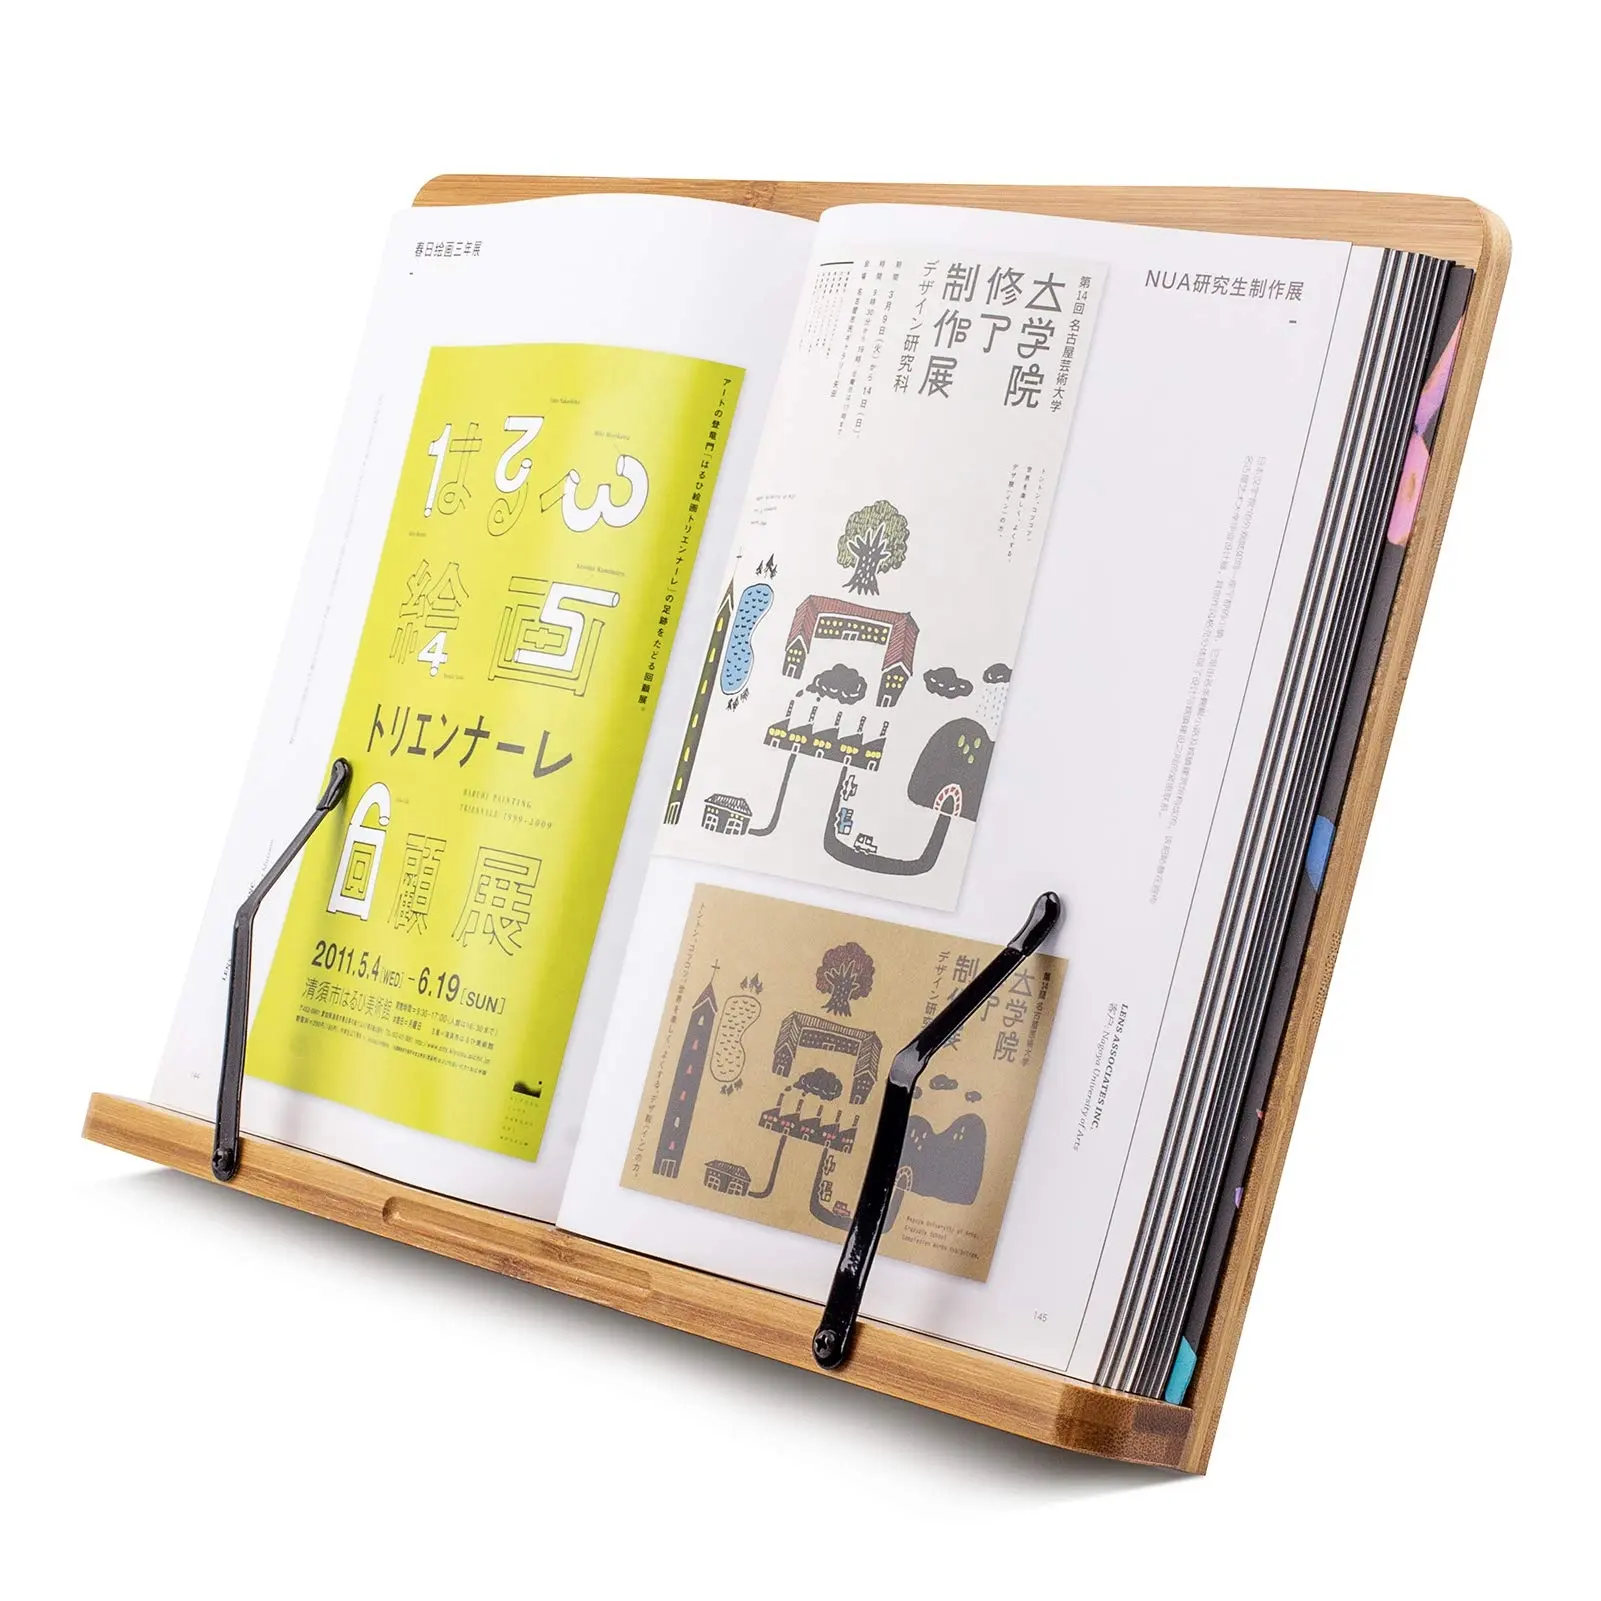 Бамбуковые подставки для книг и держатели для чтения, без рук, в кровати, для учебника, для права, с 5 подставкой для ноутбука с регулируемой высотой